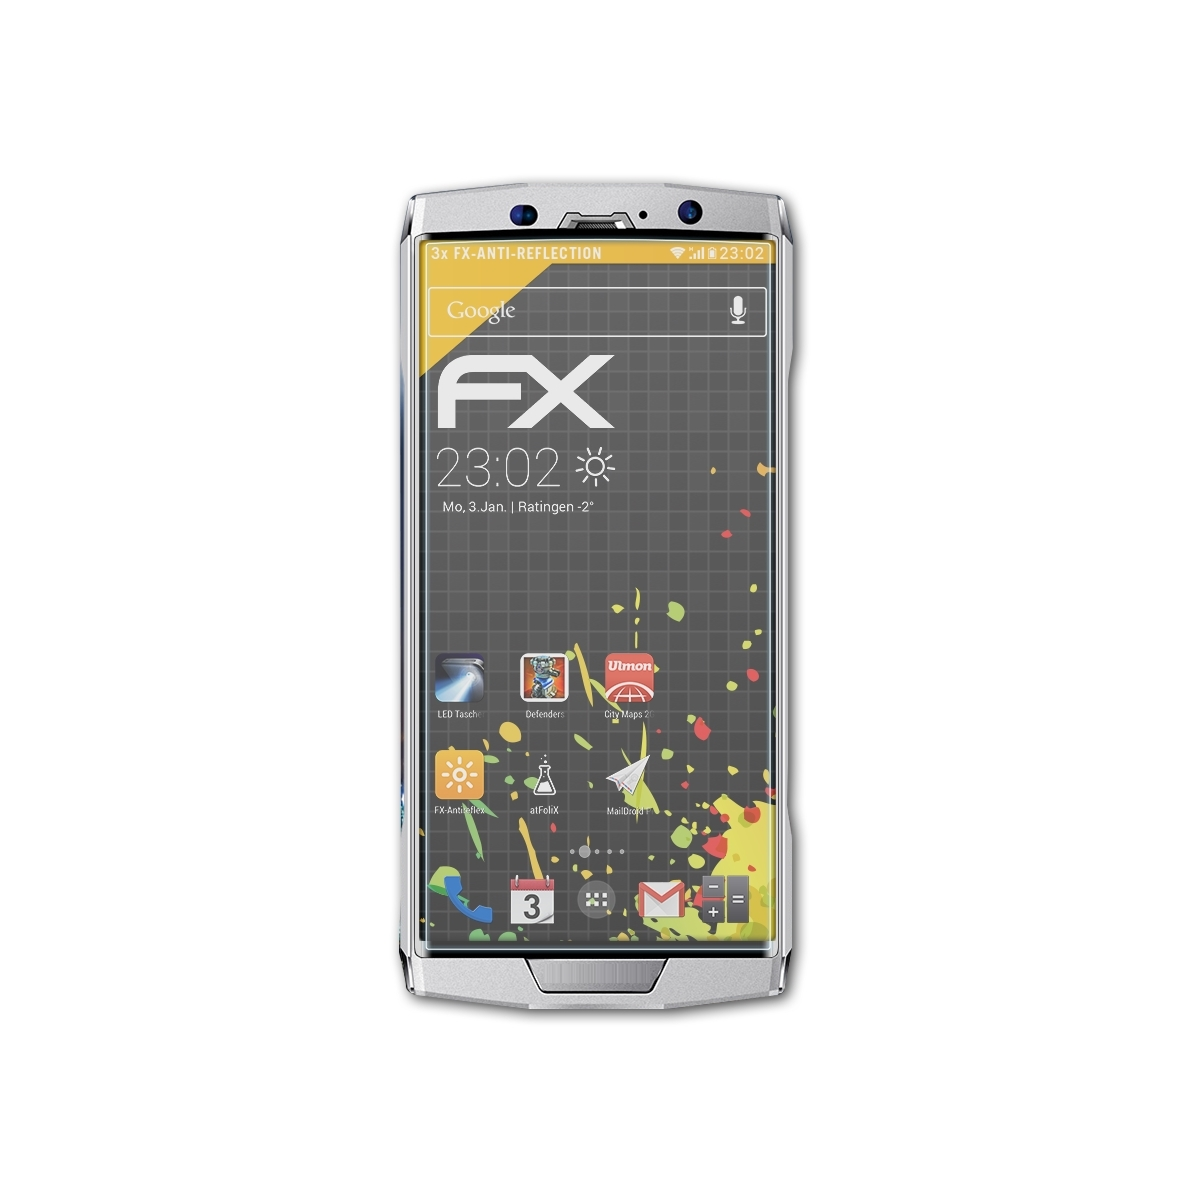 FX-Antireflex ATFOLIX Homtom Displayschutz(für 3x HT70)